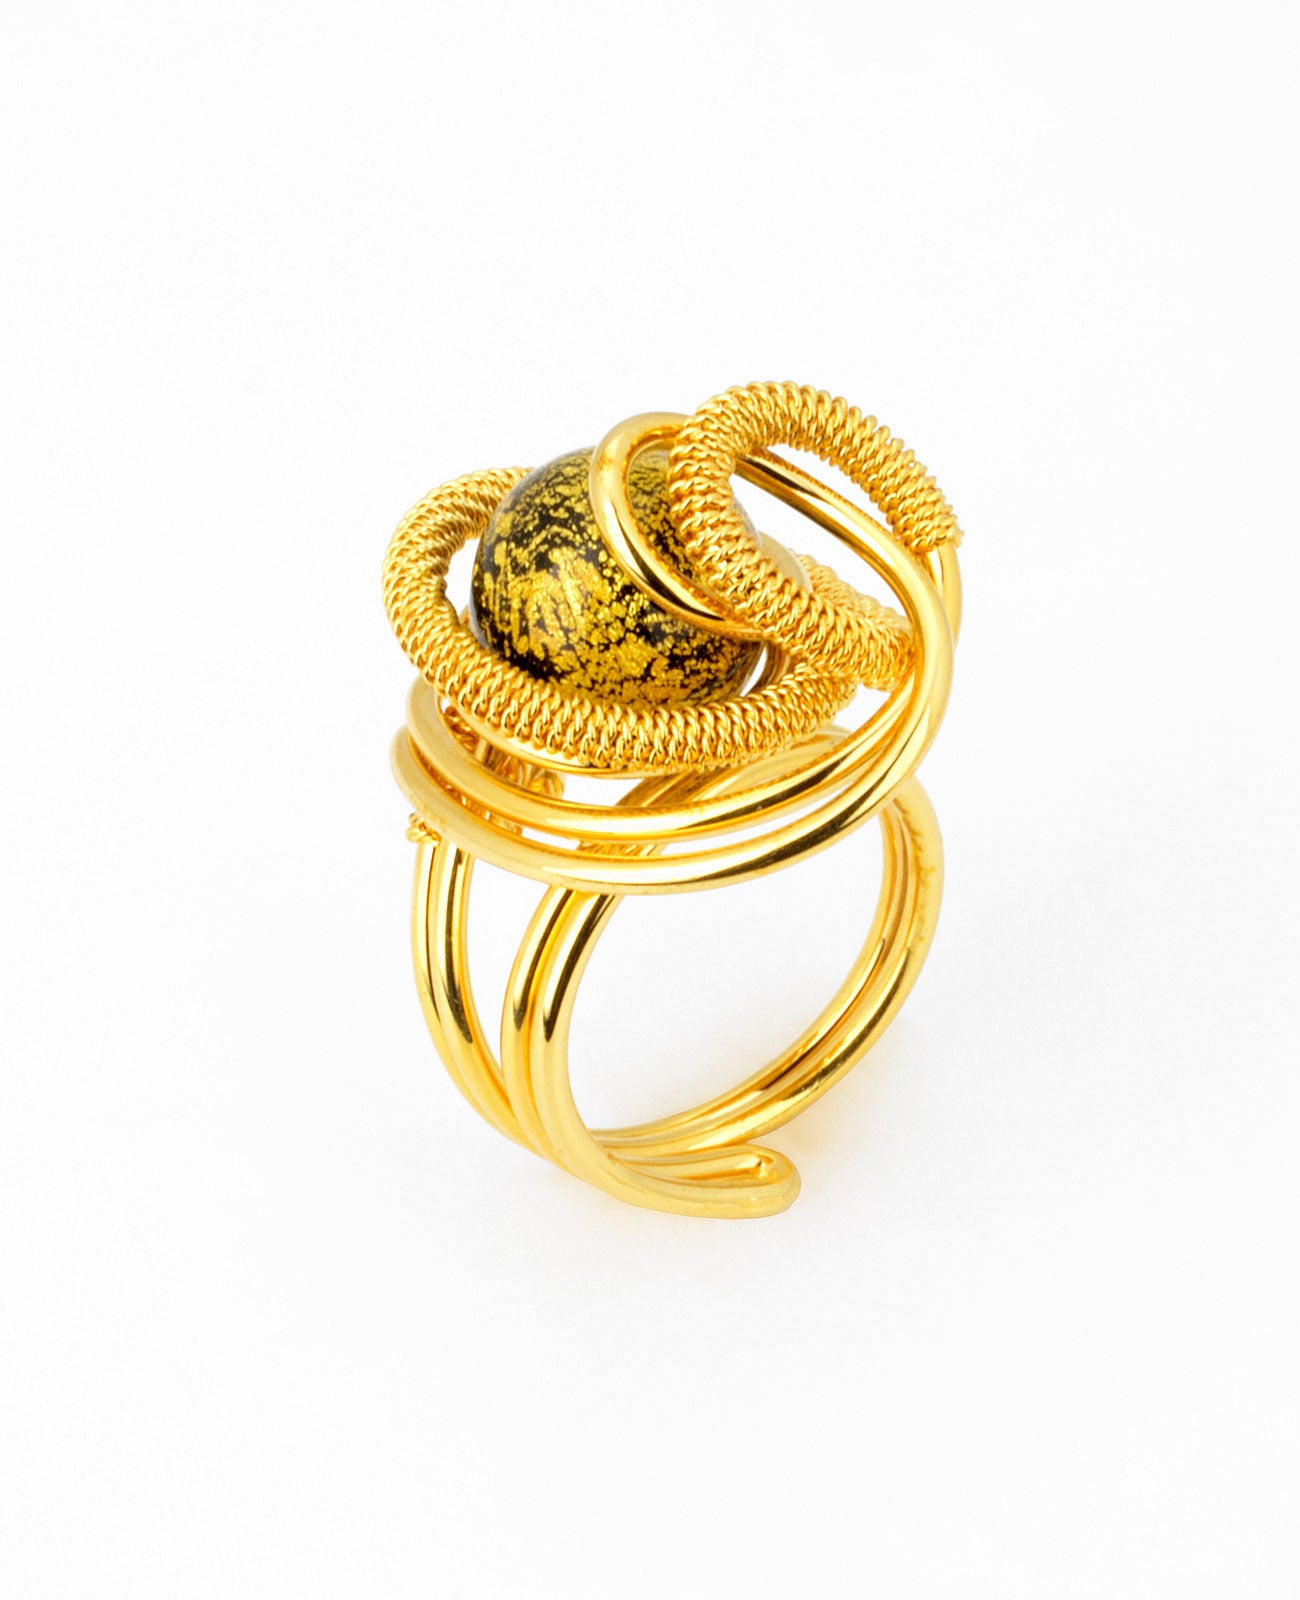 Futura Gold Ring in Murano Glass - Vetri D'Arte